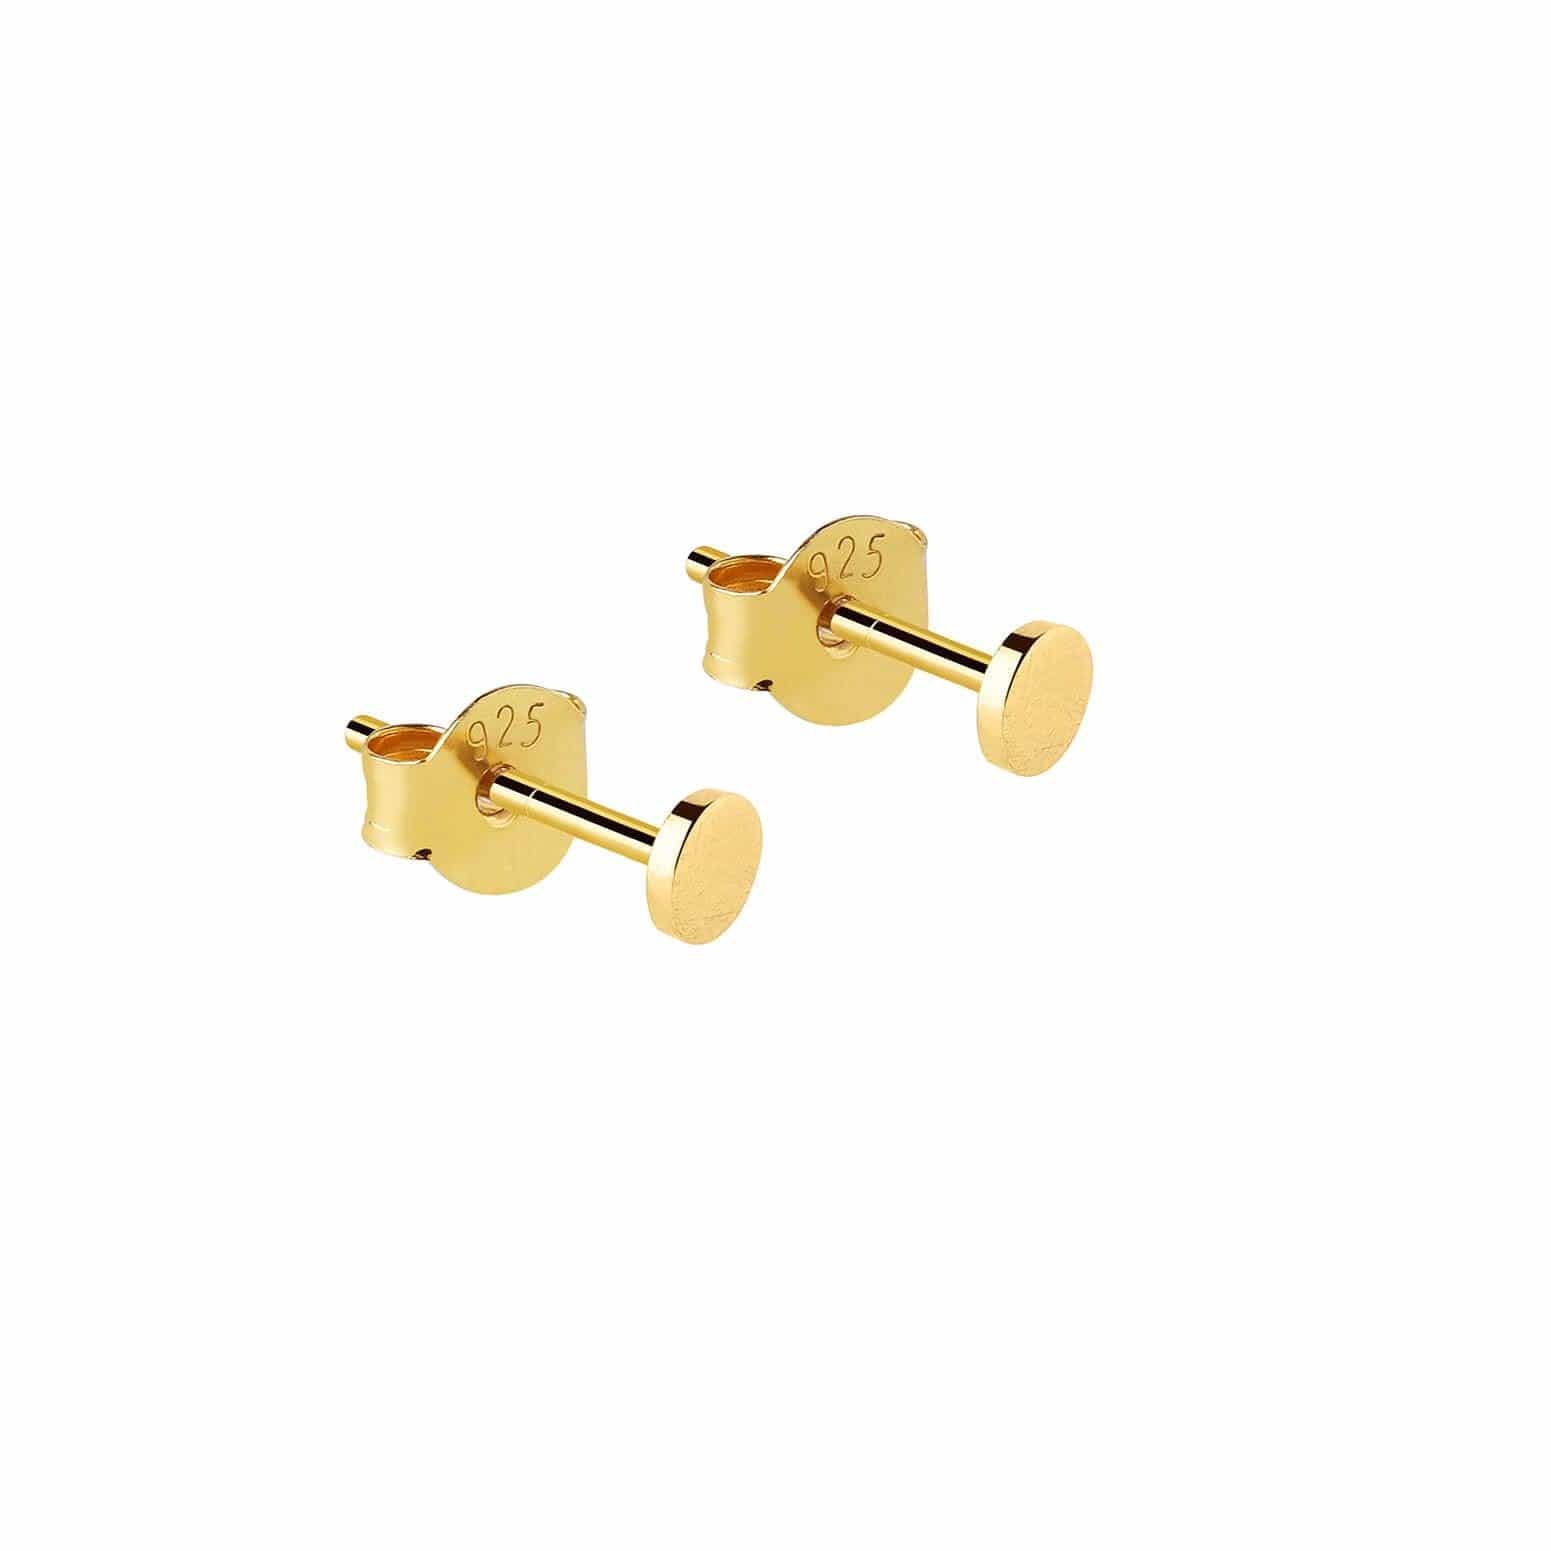 14k Gold Ball Earrings - 3mm, 4mm, 6mm, 8mm. Men and Women's Earrings. –  Crystal Casman